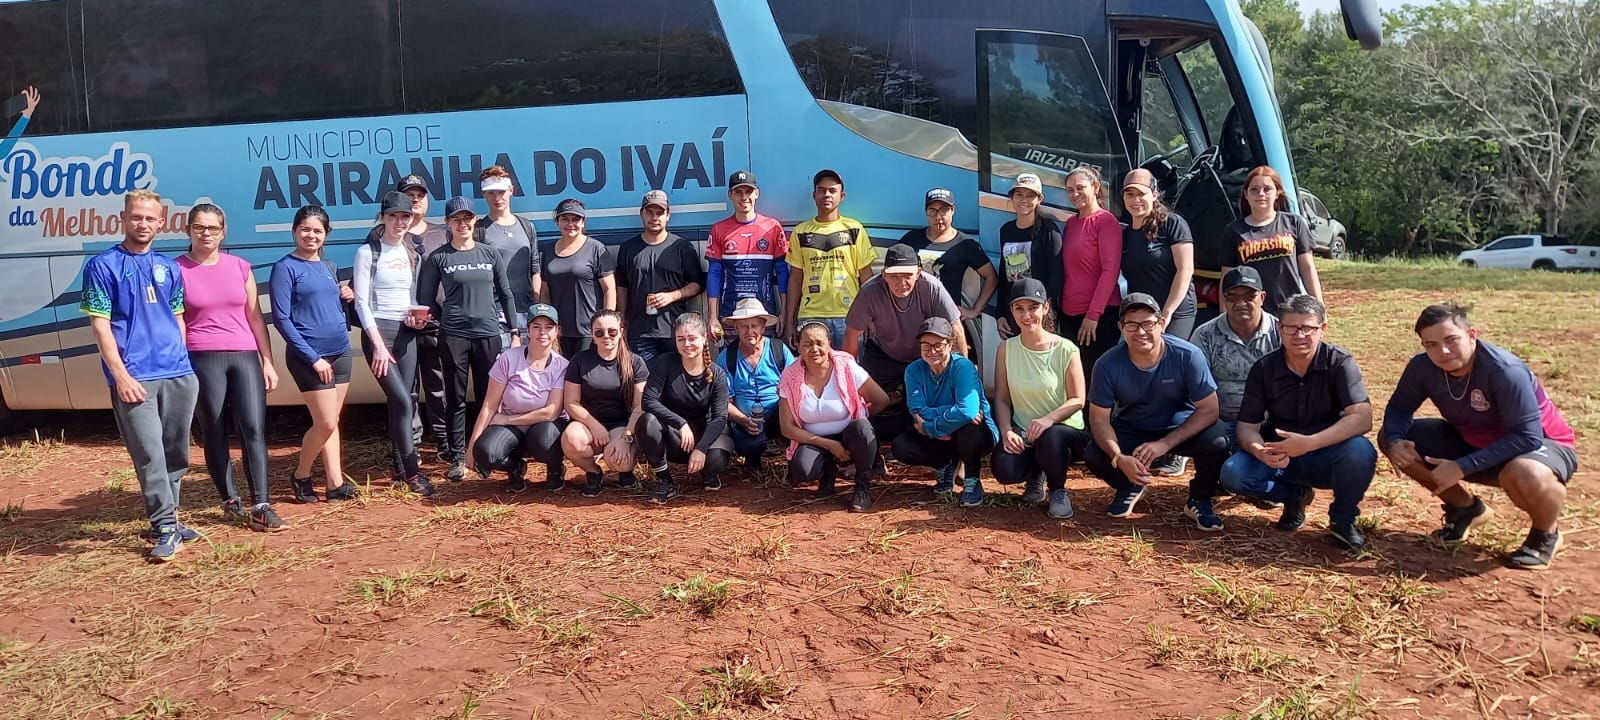 Equipe de Ariranha do Ivaí percorre 13km em caminhada ecológica em Campo Mourão